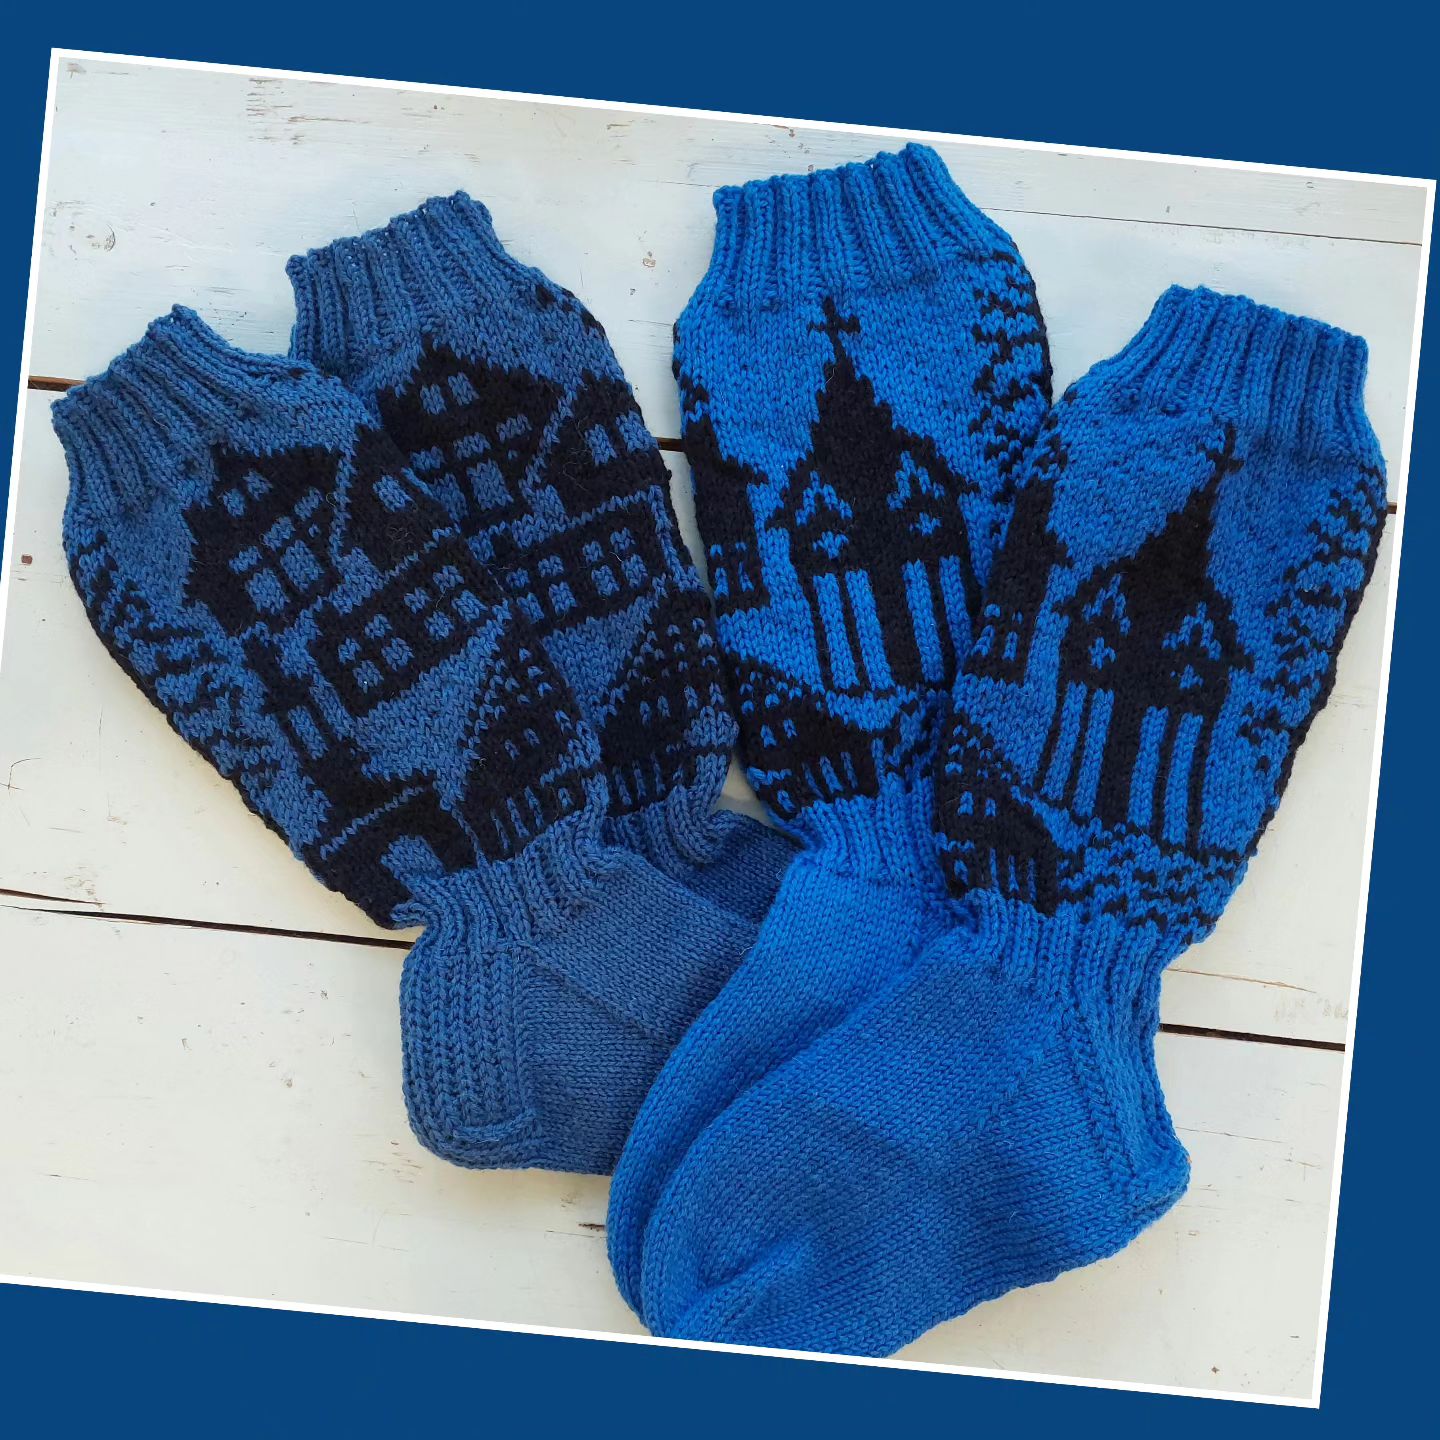 Nurmes-sukat valmistuu tilauksesta noin kolmessa viikossa. Siniset lähtevät nyt niille sopiviin jalkoihin.

#nurmessukat #nurmesvillasukat #villakudelma